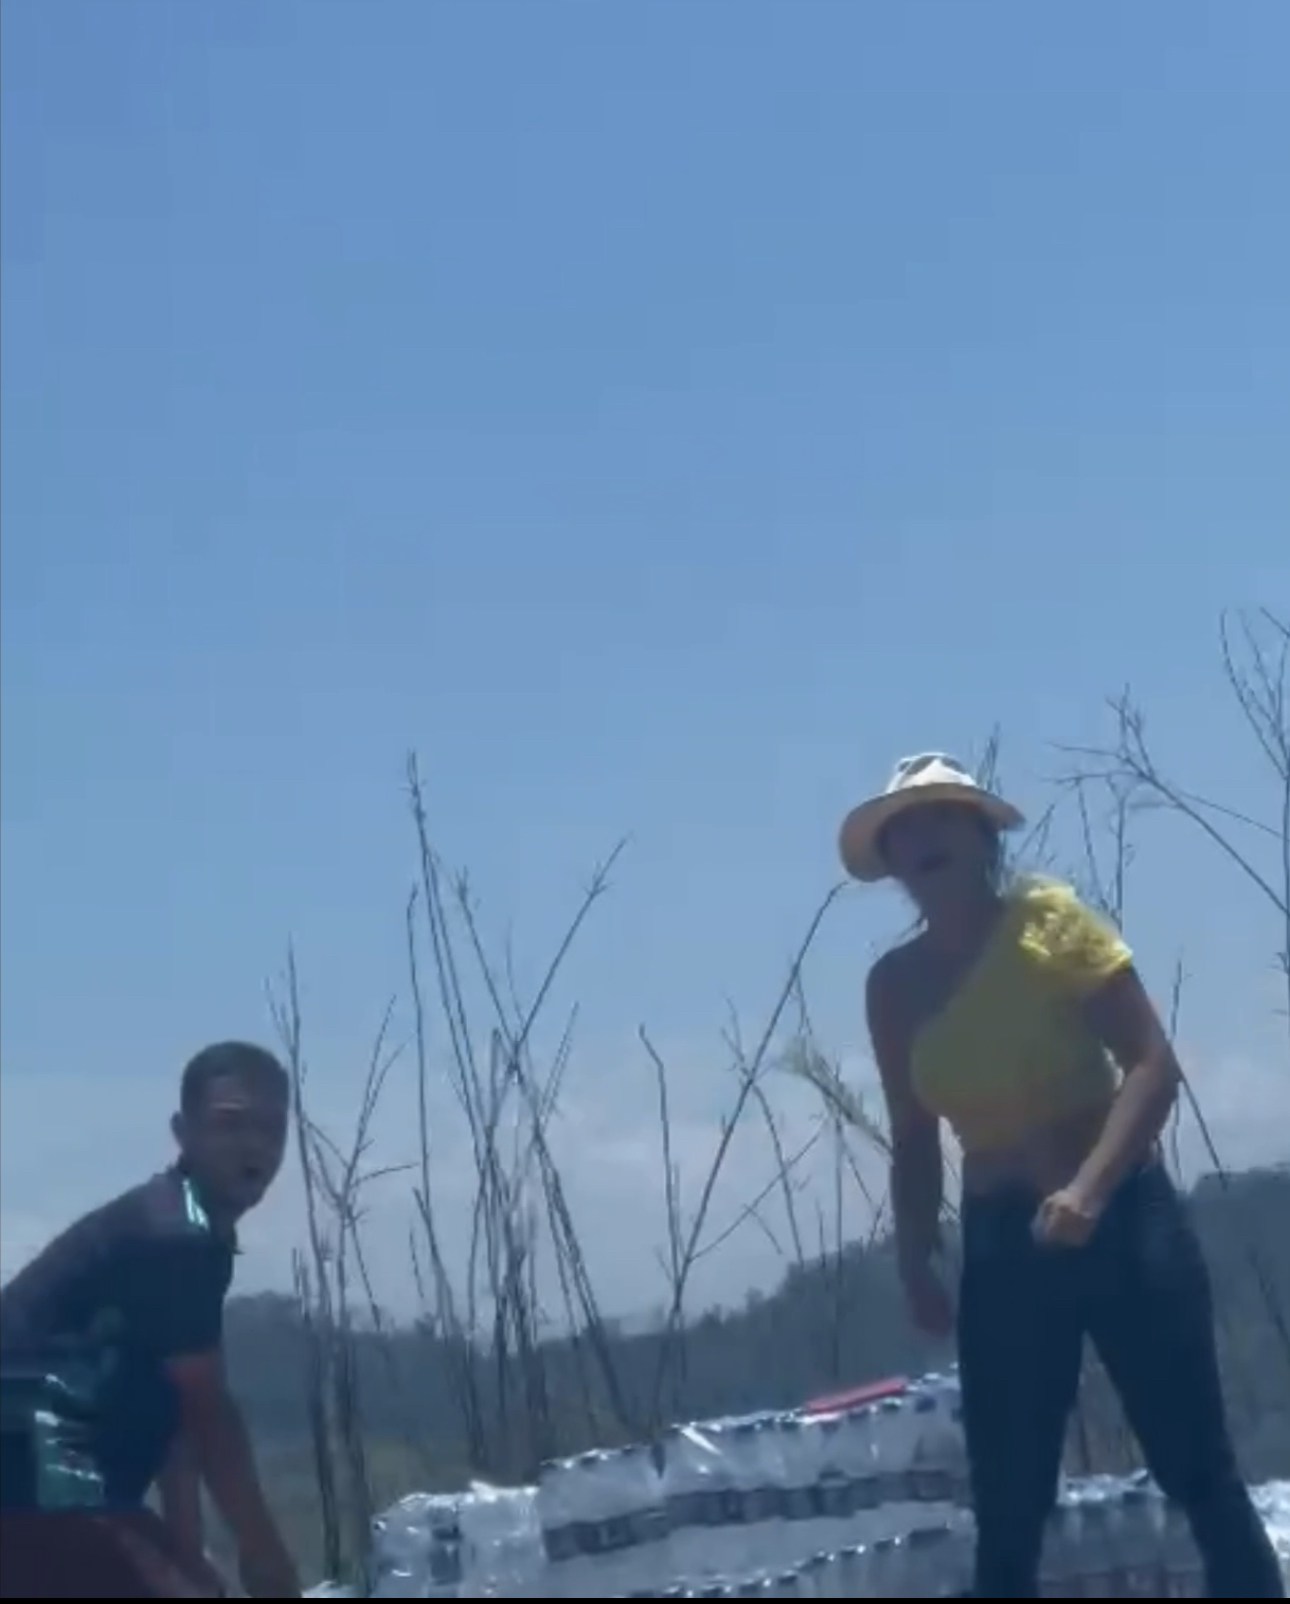 Moradores de Carlos Chagas flagram saque de carga de água e mulher joga garrafa neles: “Tão filmando o que?”